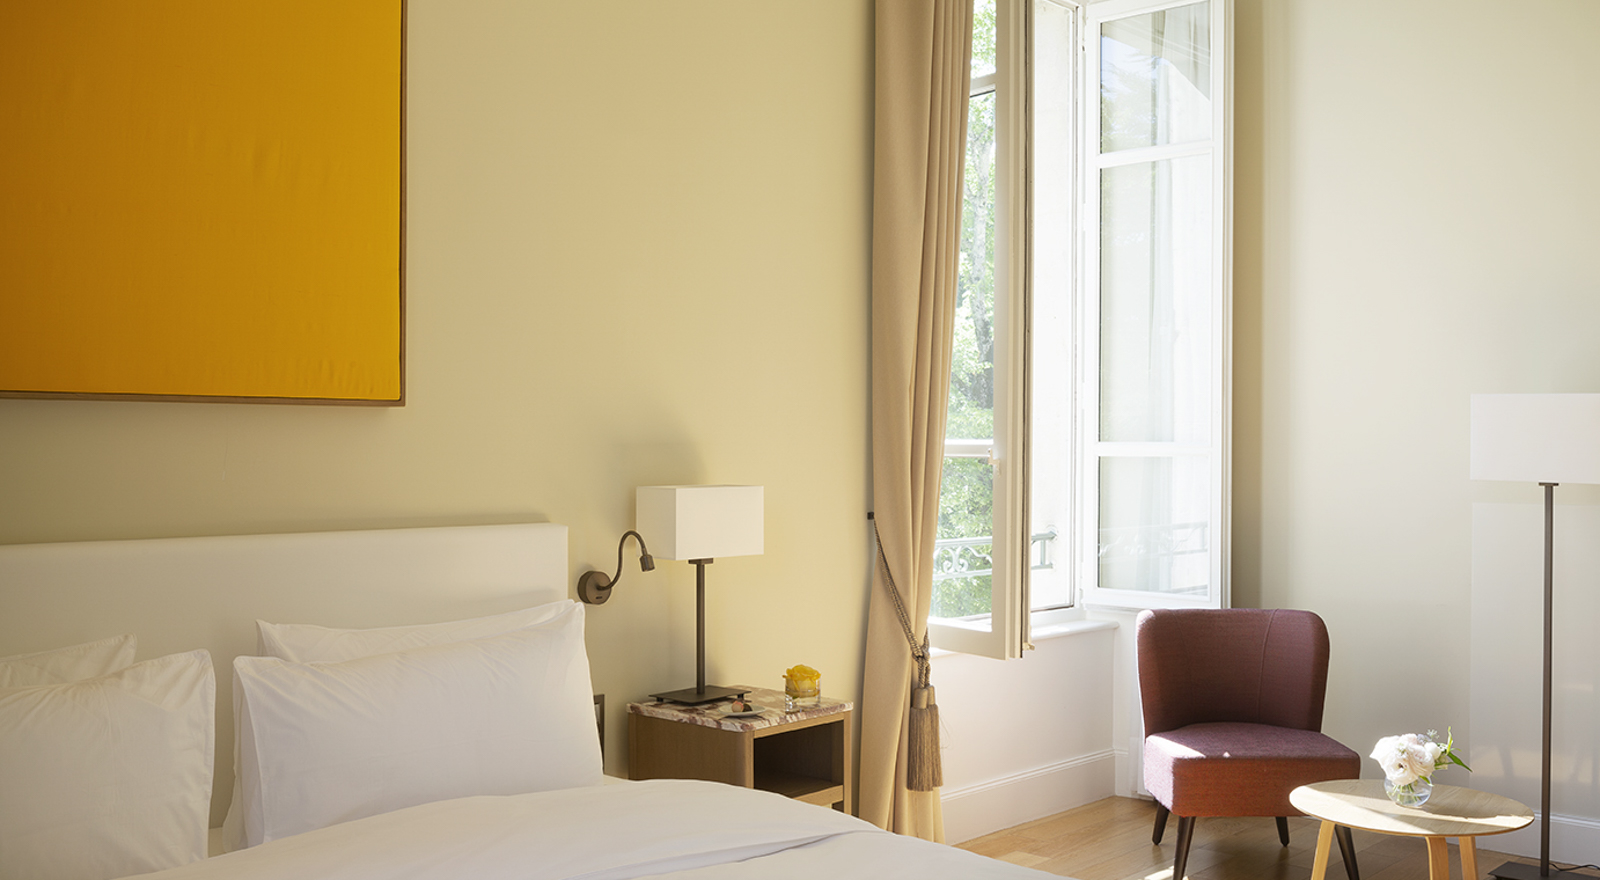 Privilegiertes Zimmer, Château de Montcaud, Provence, Frankreich. Komfortables und geräumiges Zimmer mit Lounge-Ecke. Blick auf den historischen Park